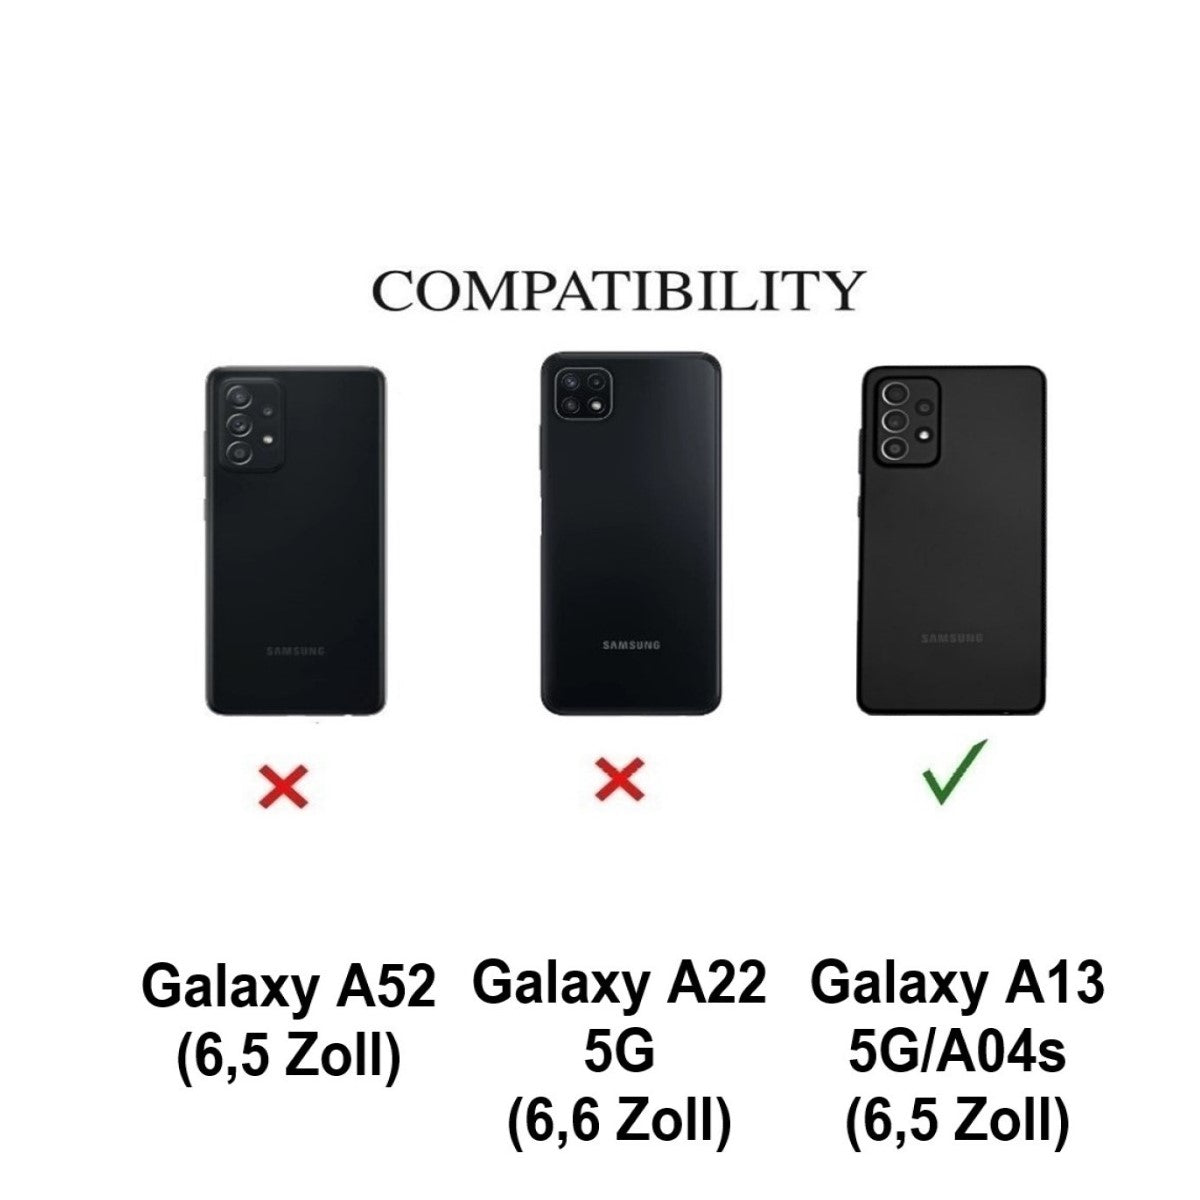 Hülle für Samsung Galaxy A13 4/5G/A04s Handy Silikon Handykette Cover Dunkelgrün